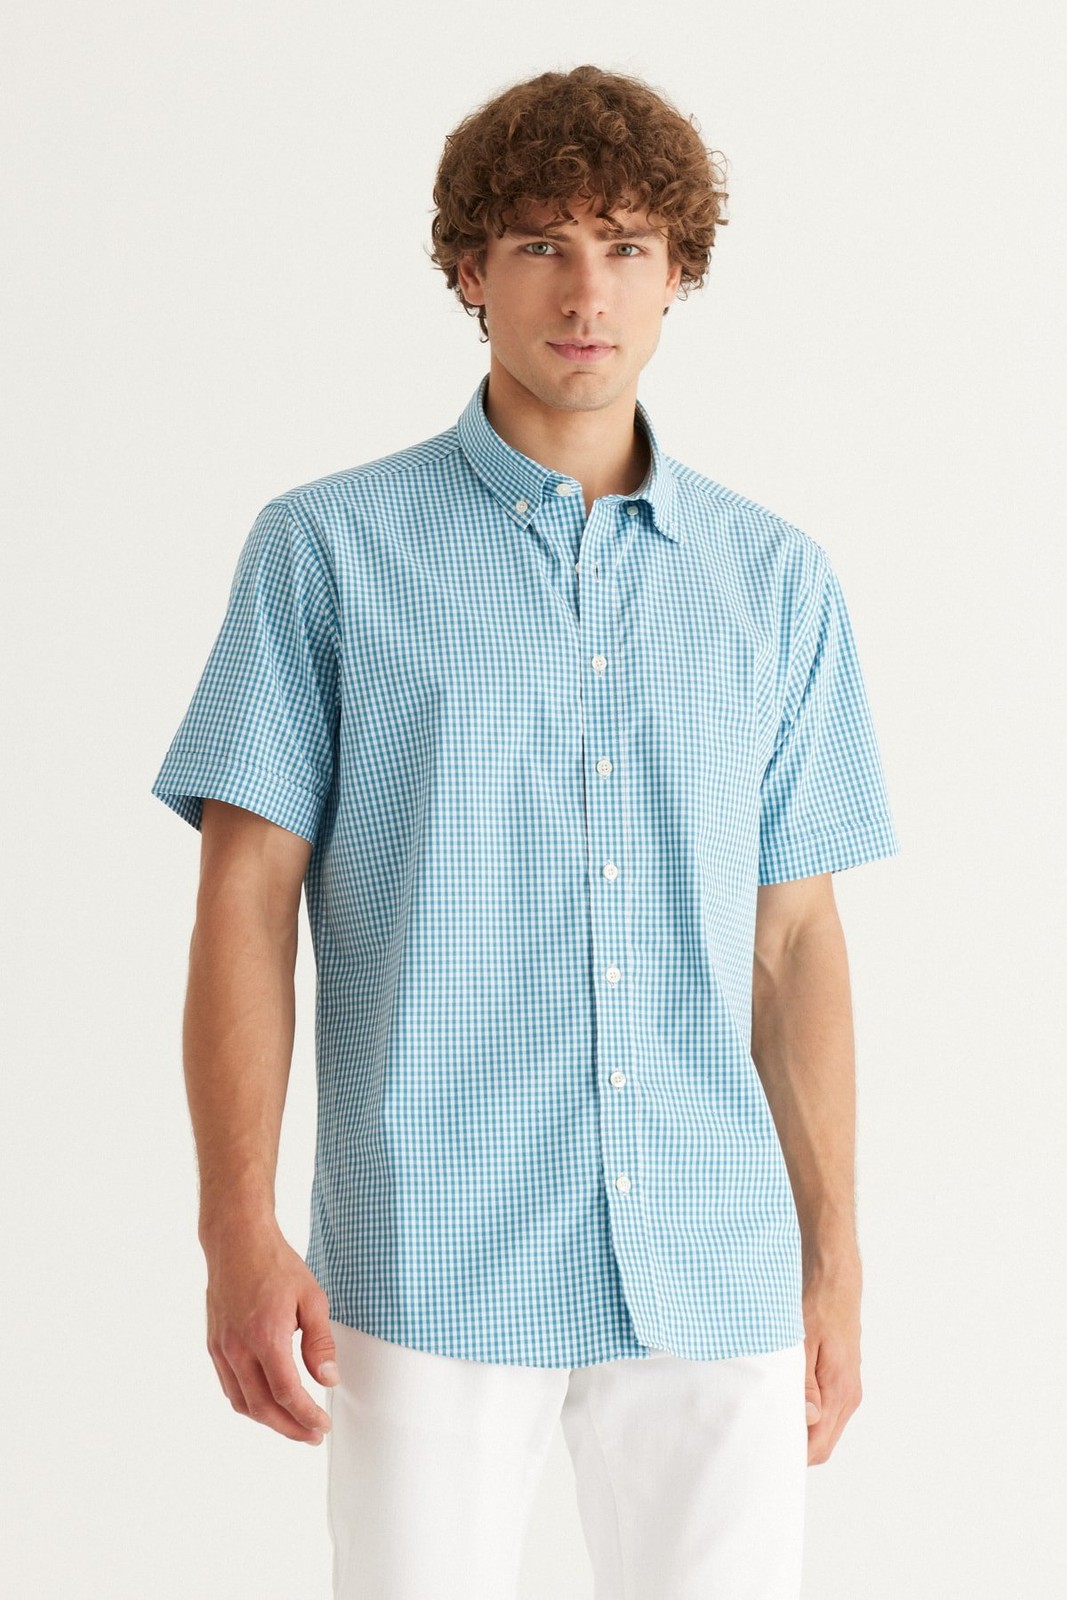 AC&Co / Altınyıldız Classics Men's White-turquoise Comfort Fit Comfy Cut Buttoned Collar 100% Cotton Gingham Shirt.